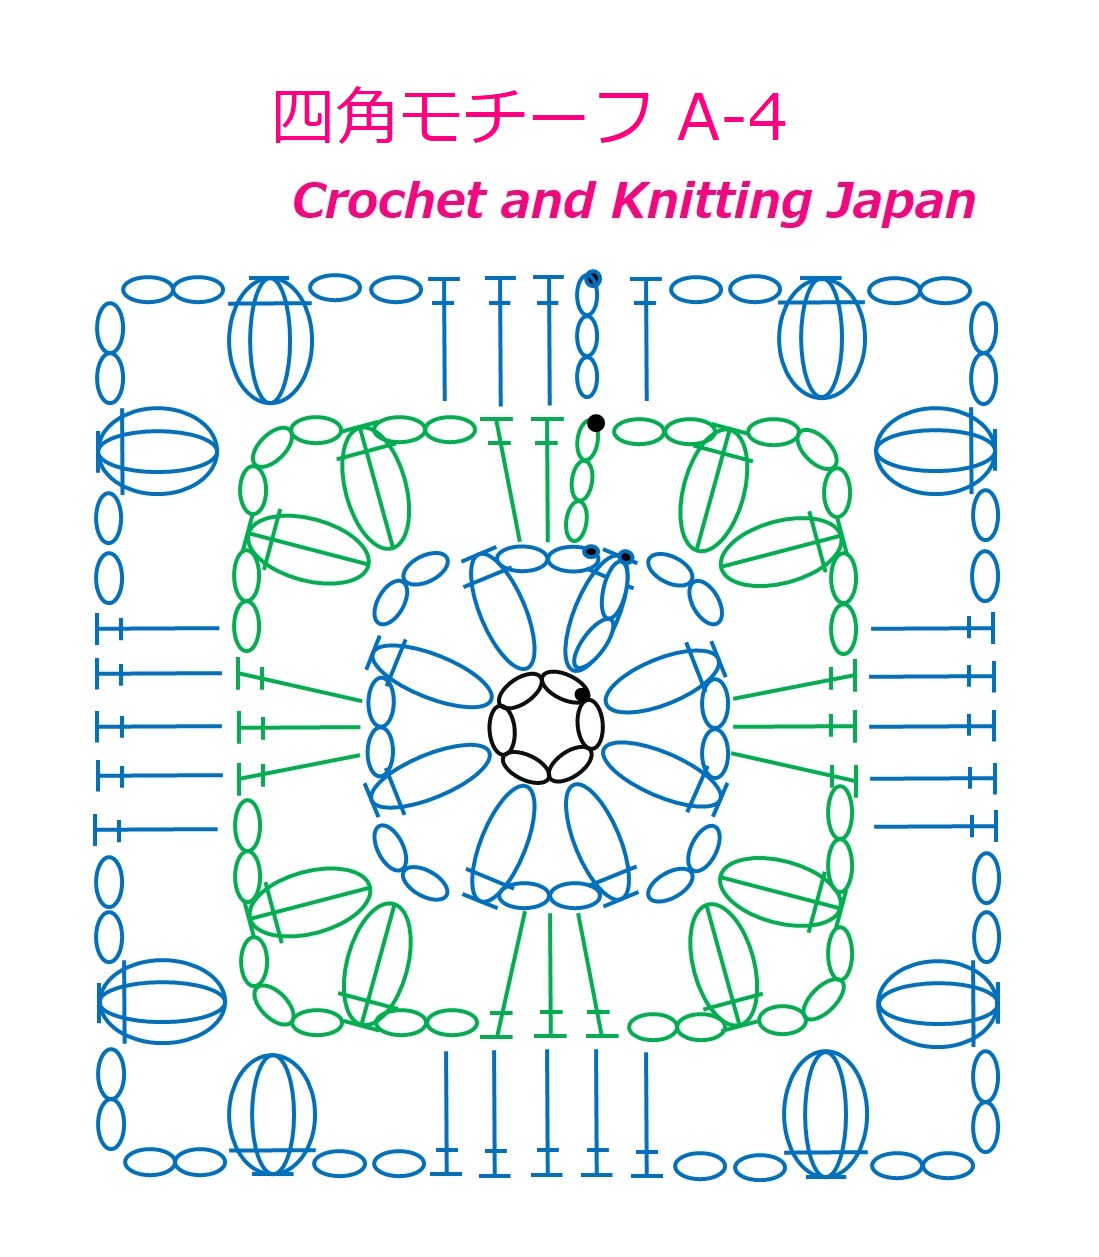 かぎ編み Crochet Japan クロッシェジャパン 四角モチーフ A 4 かぎ針編み 編み図 字幕解説 Square Motif Crochet And Knitting Japan